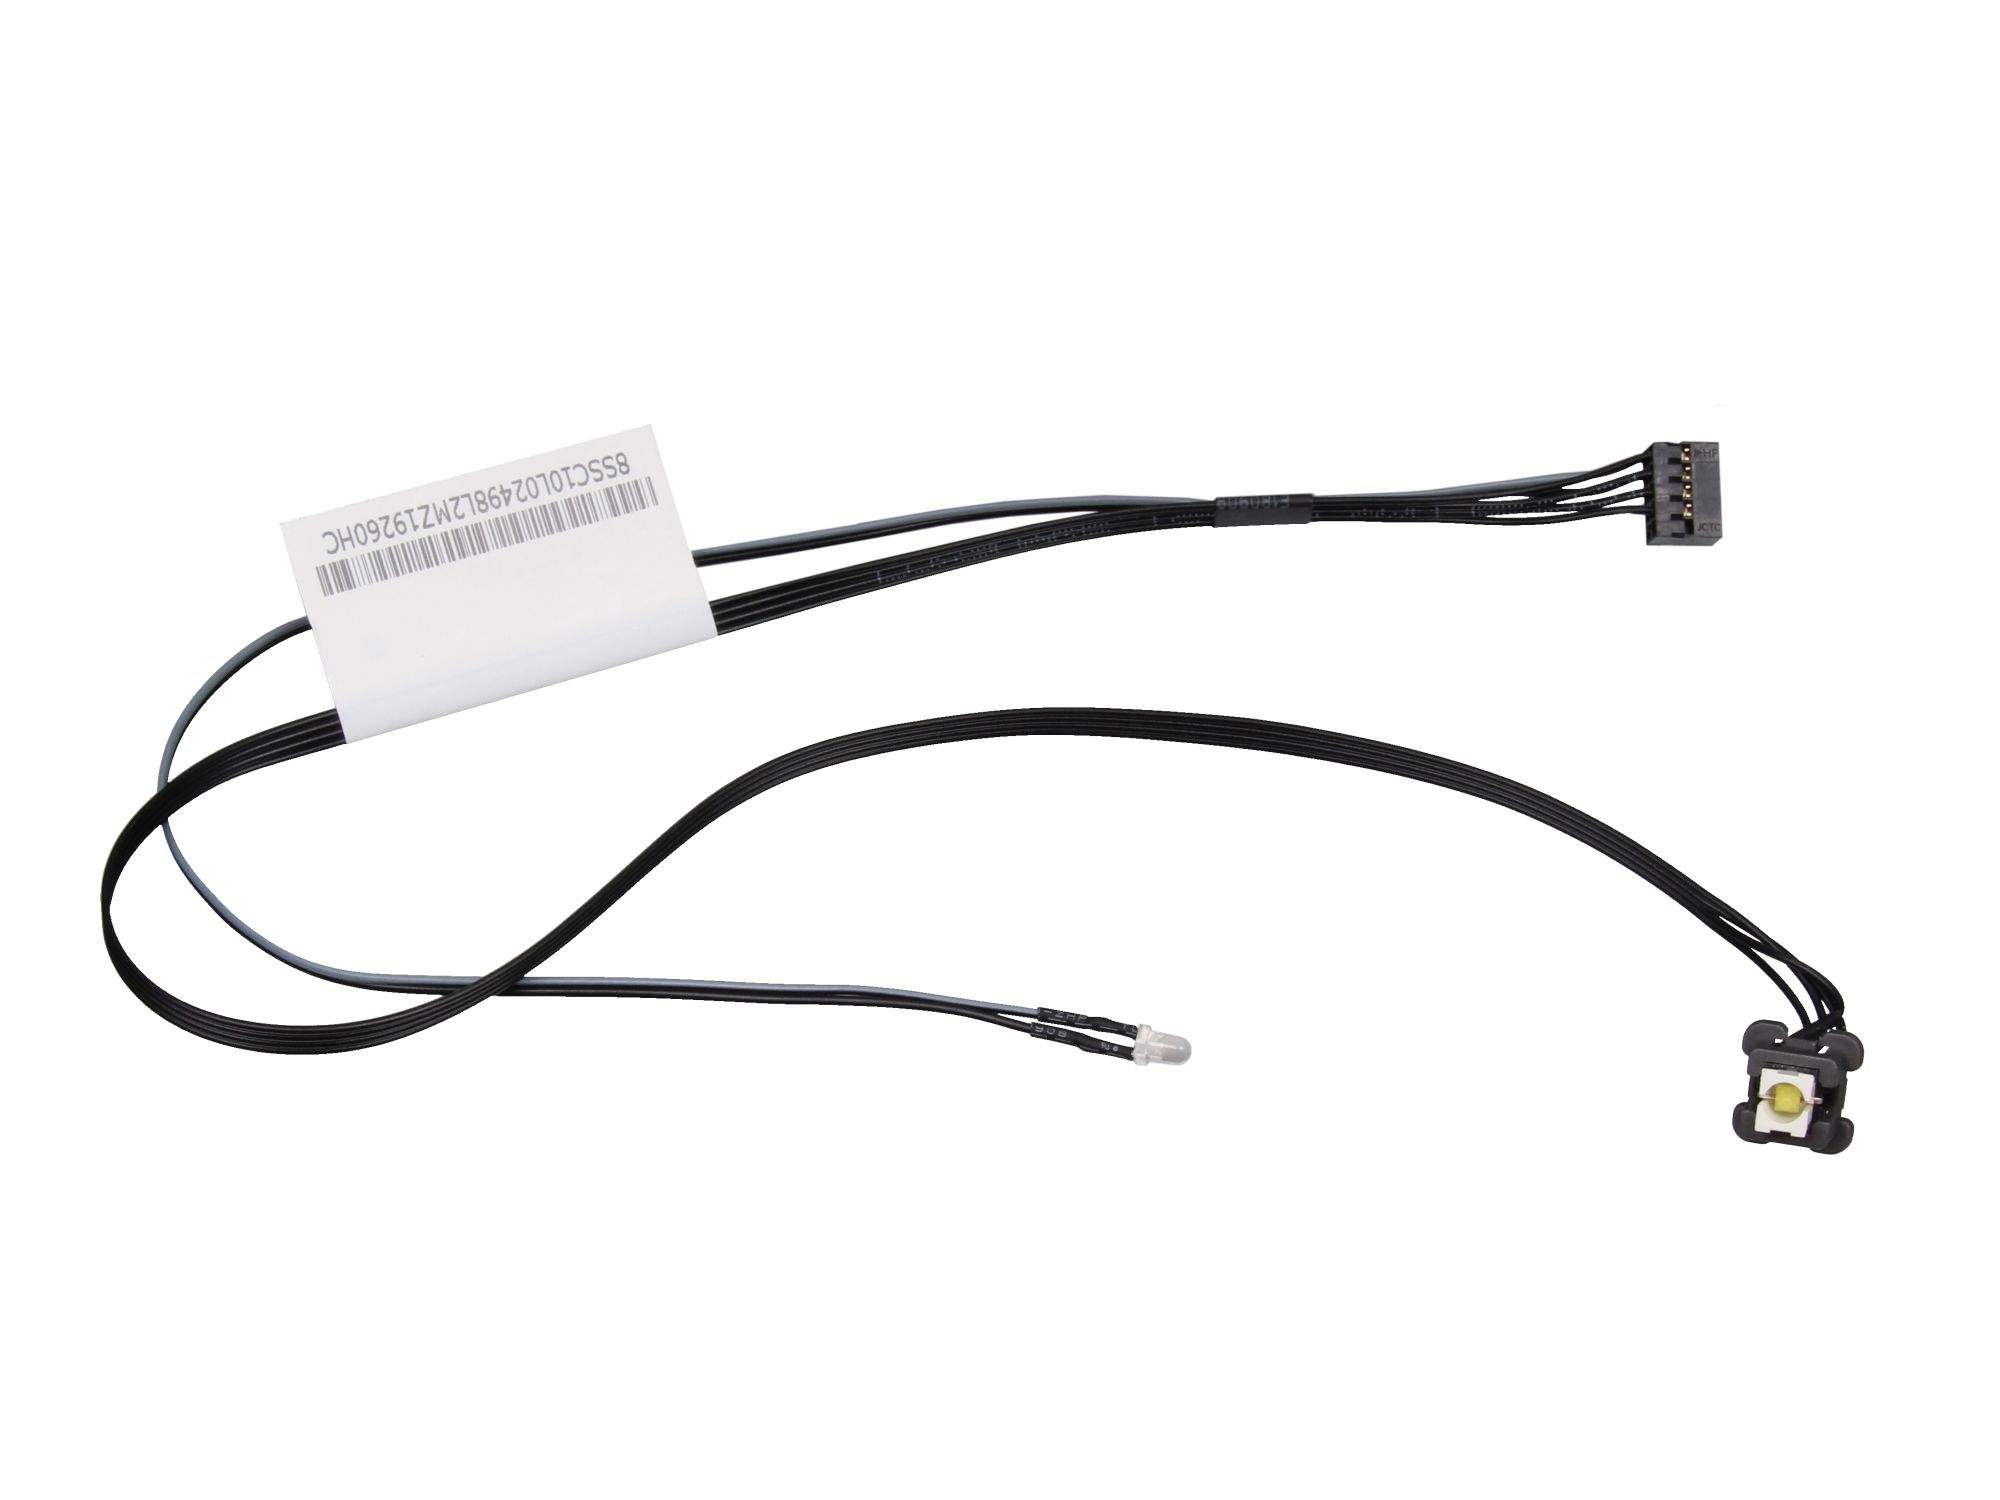 LENOVO Cable Fru360mm LED 1SW L